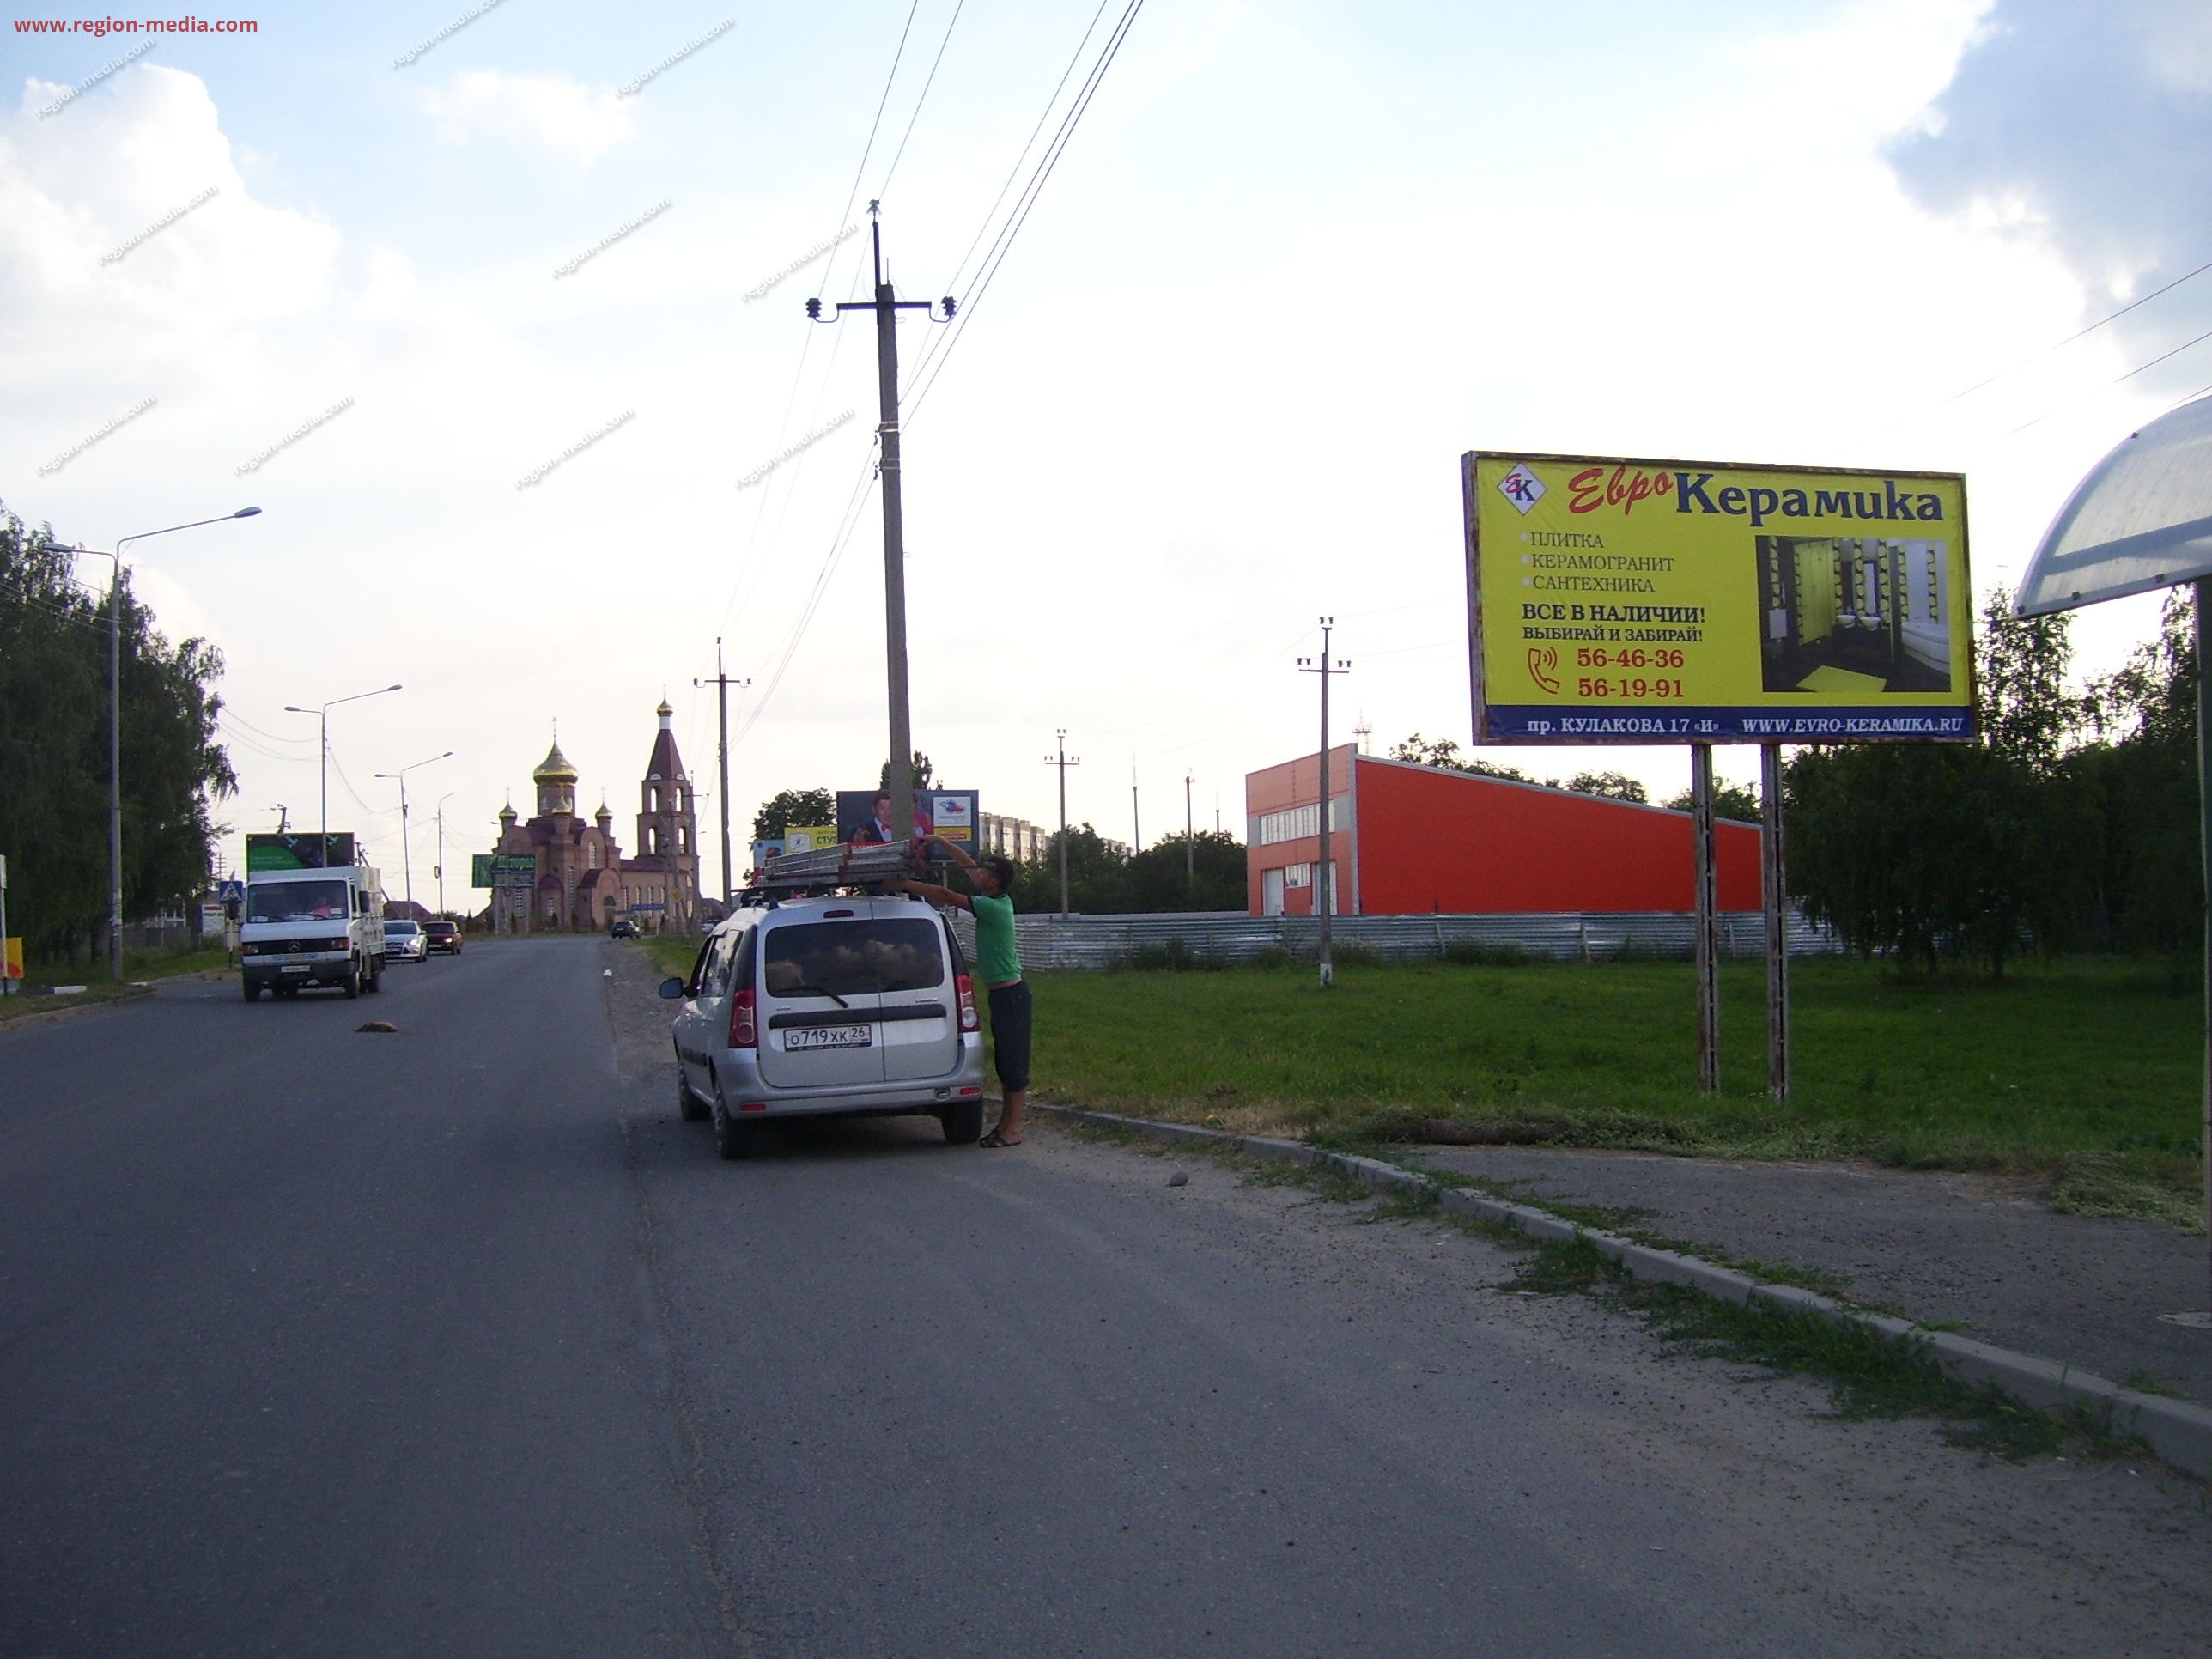 Размещение рекламы компании "Еврокерамика" на щитах 3х6 в городе Михайловск